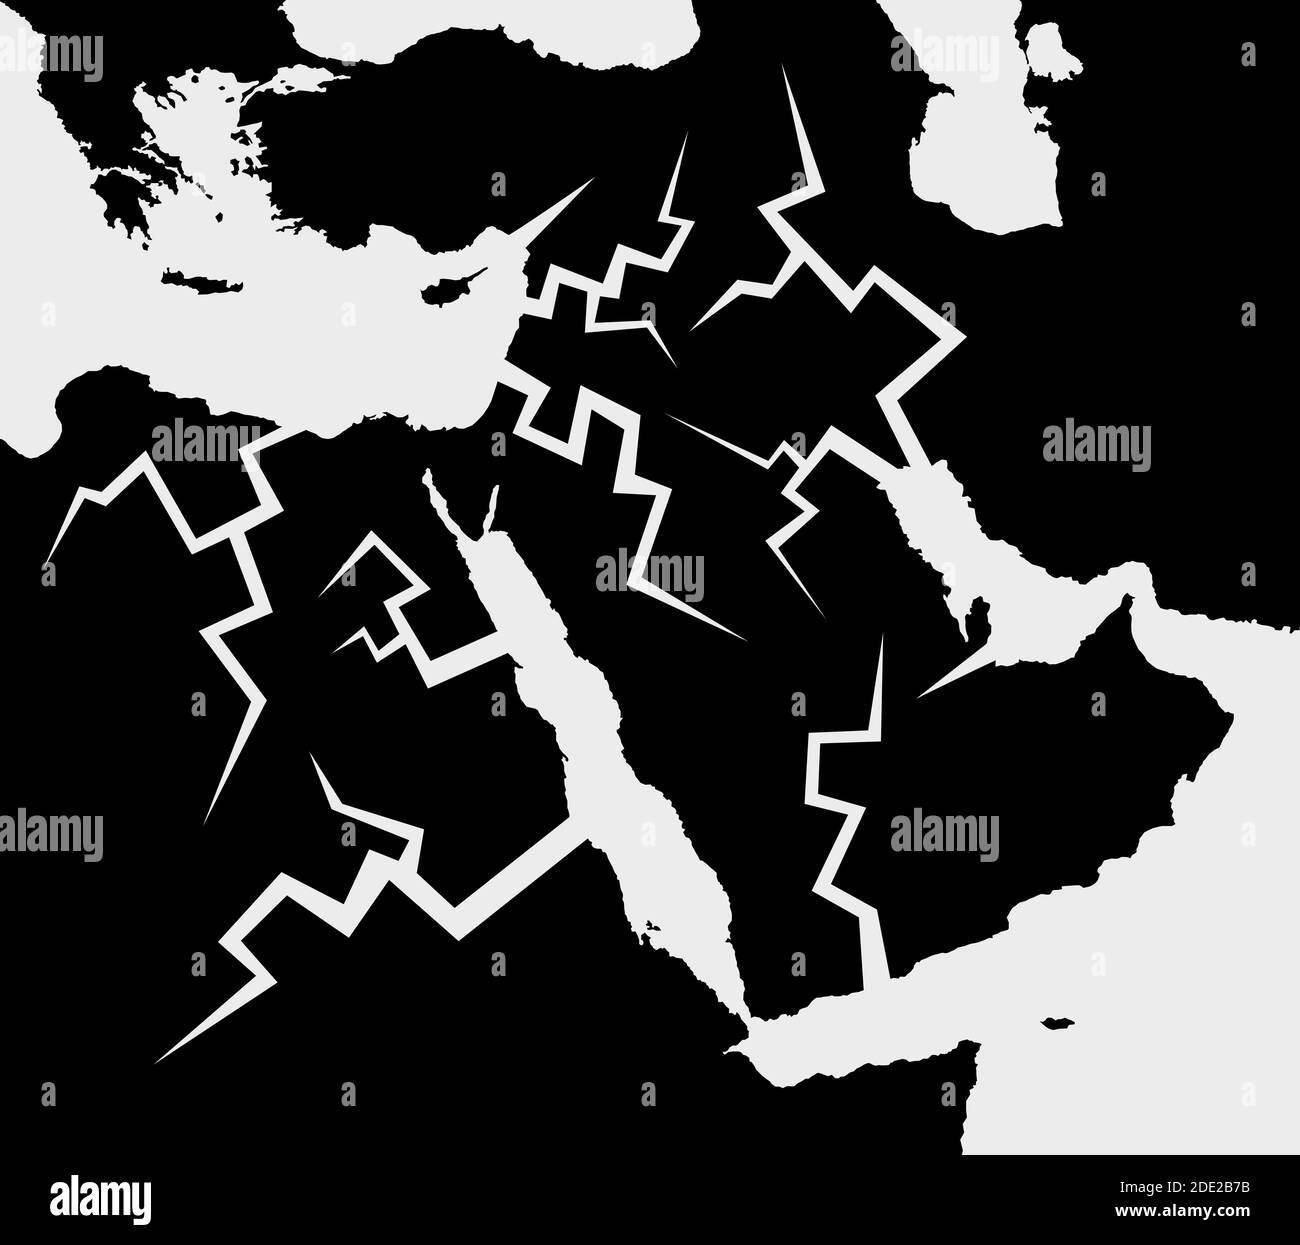 Mapa blanco y negro de Oriente Medio con grietas - conflicto, crisis y  tensión en la región árabe, desintegración y división de los países,  destructi Fotografía de stock - Alamy